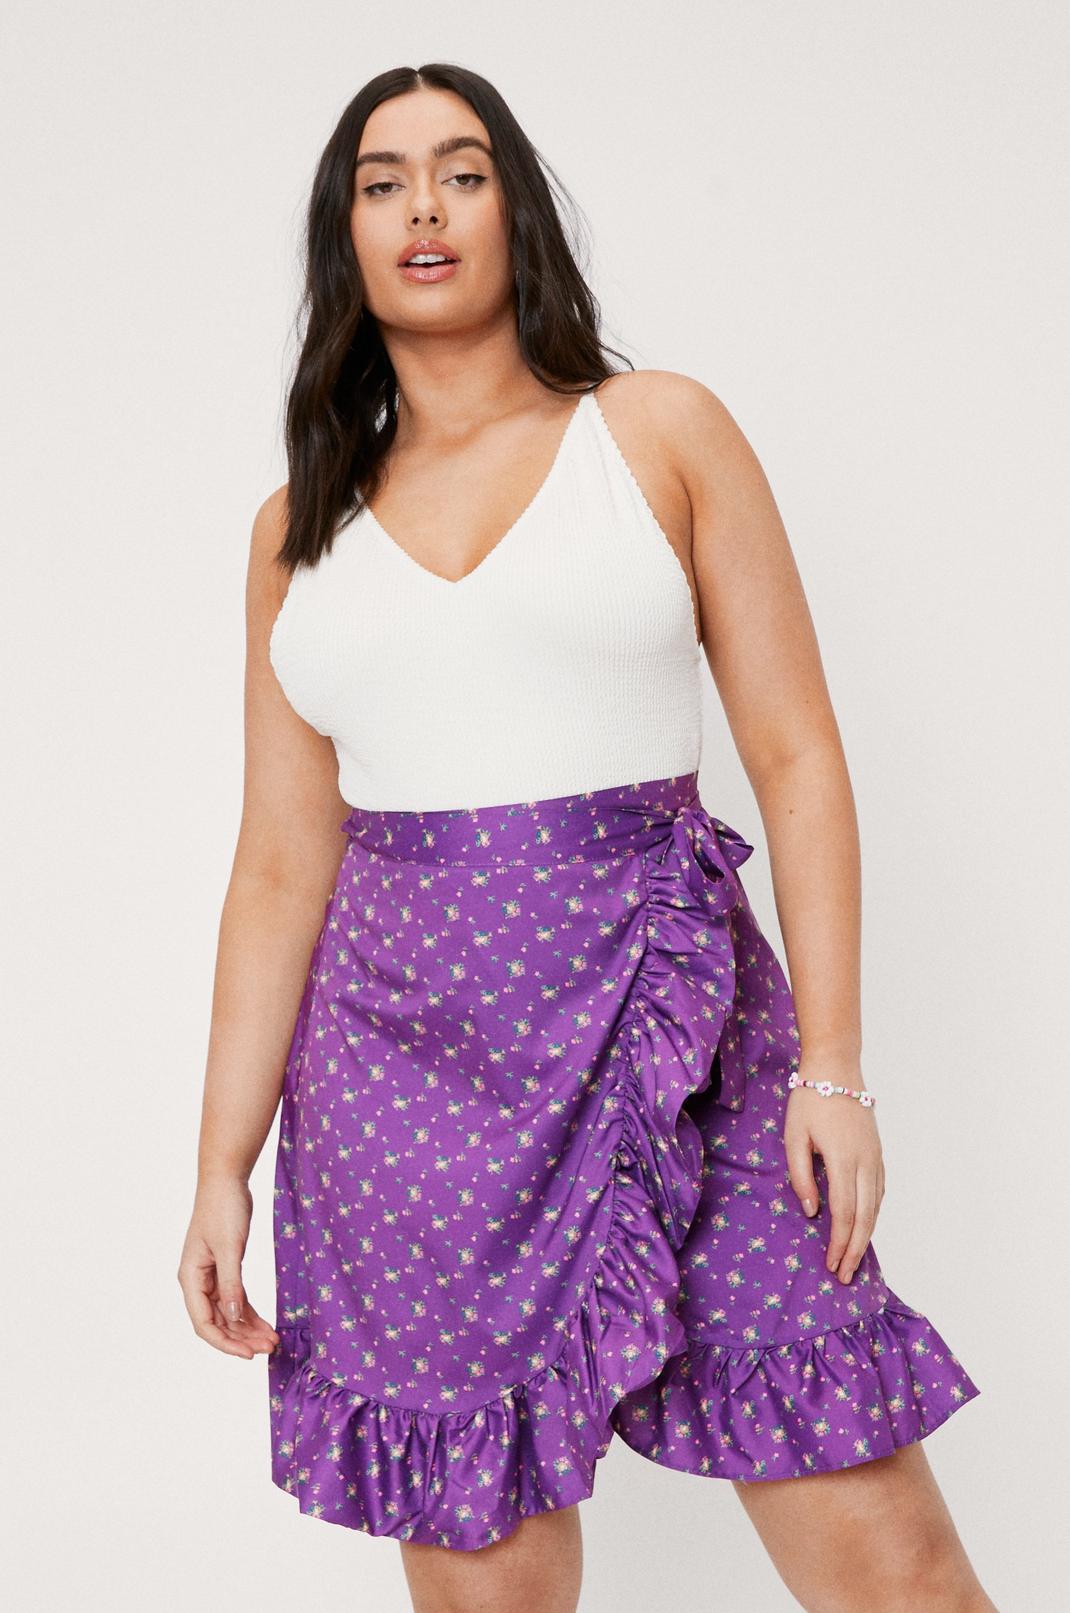 Envelope Skirt Plus Size Sales Online | indest.uv.es